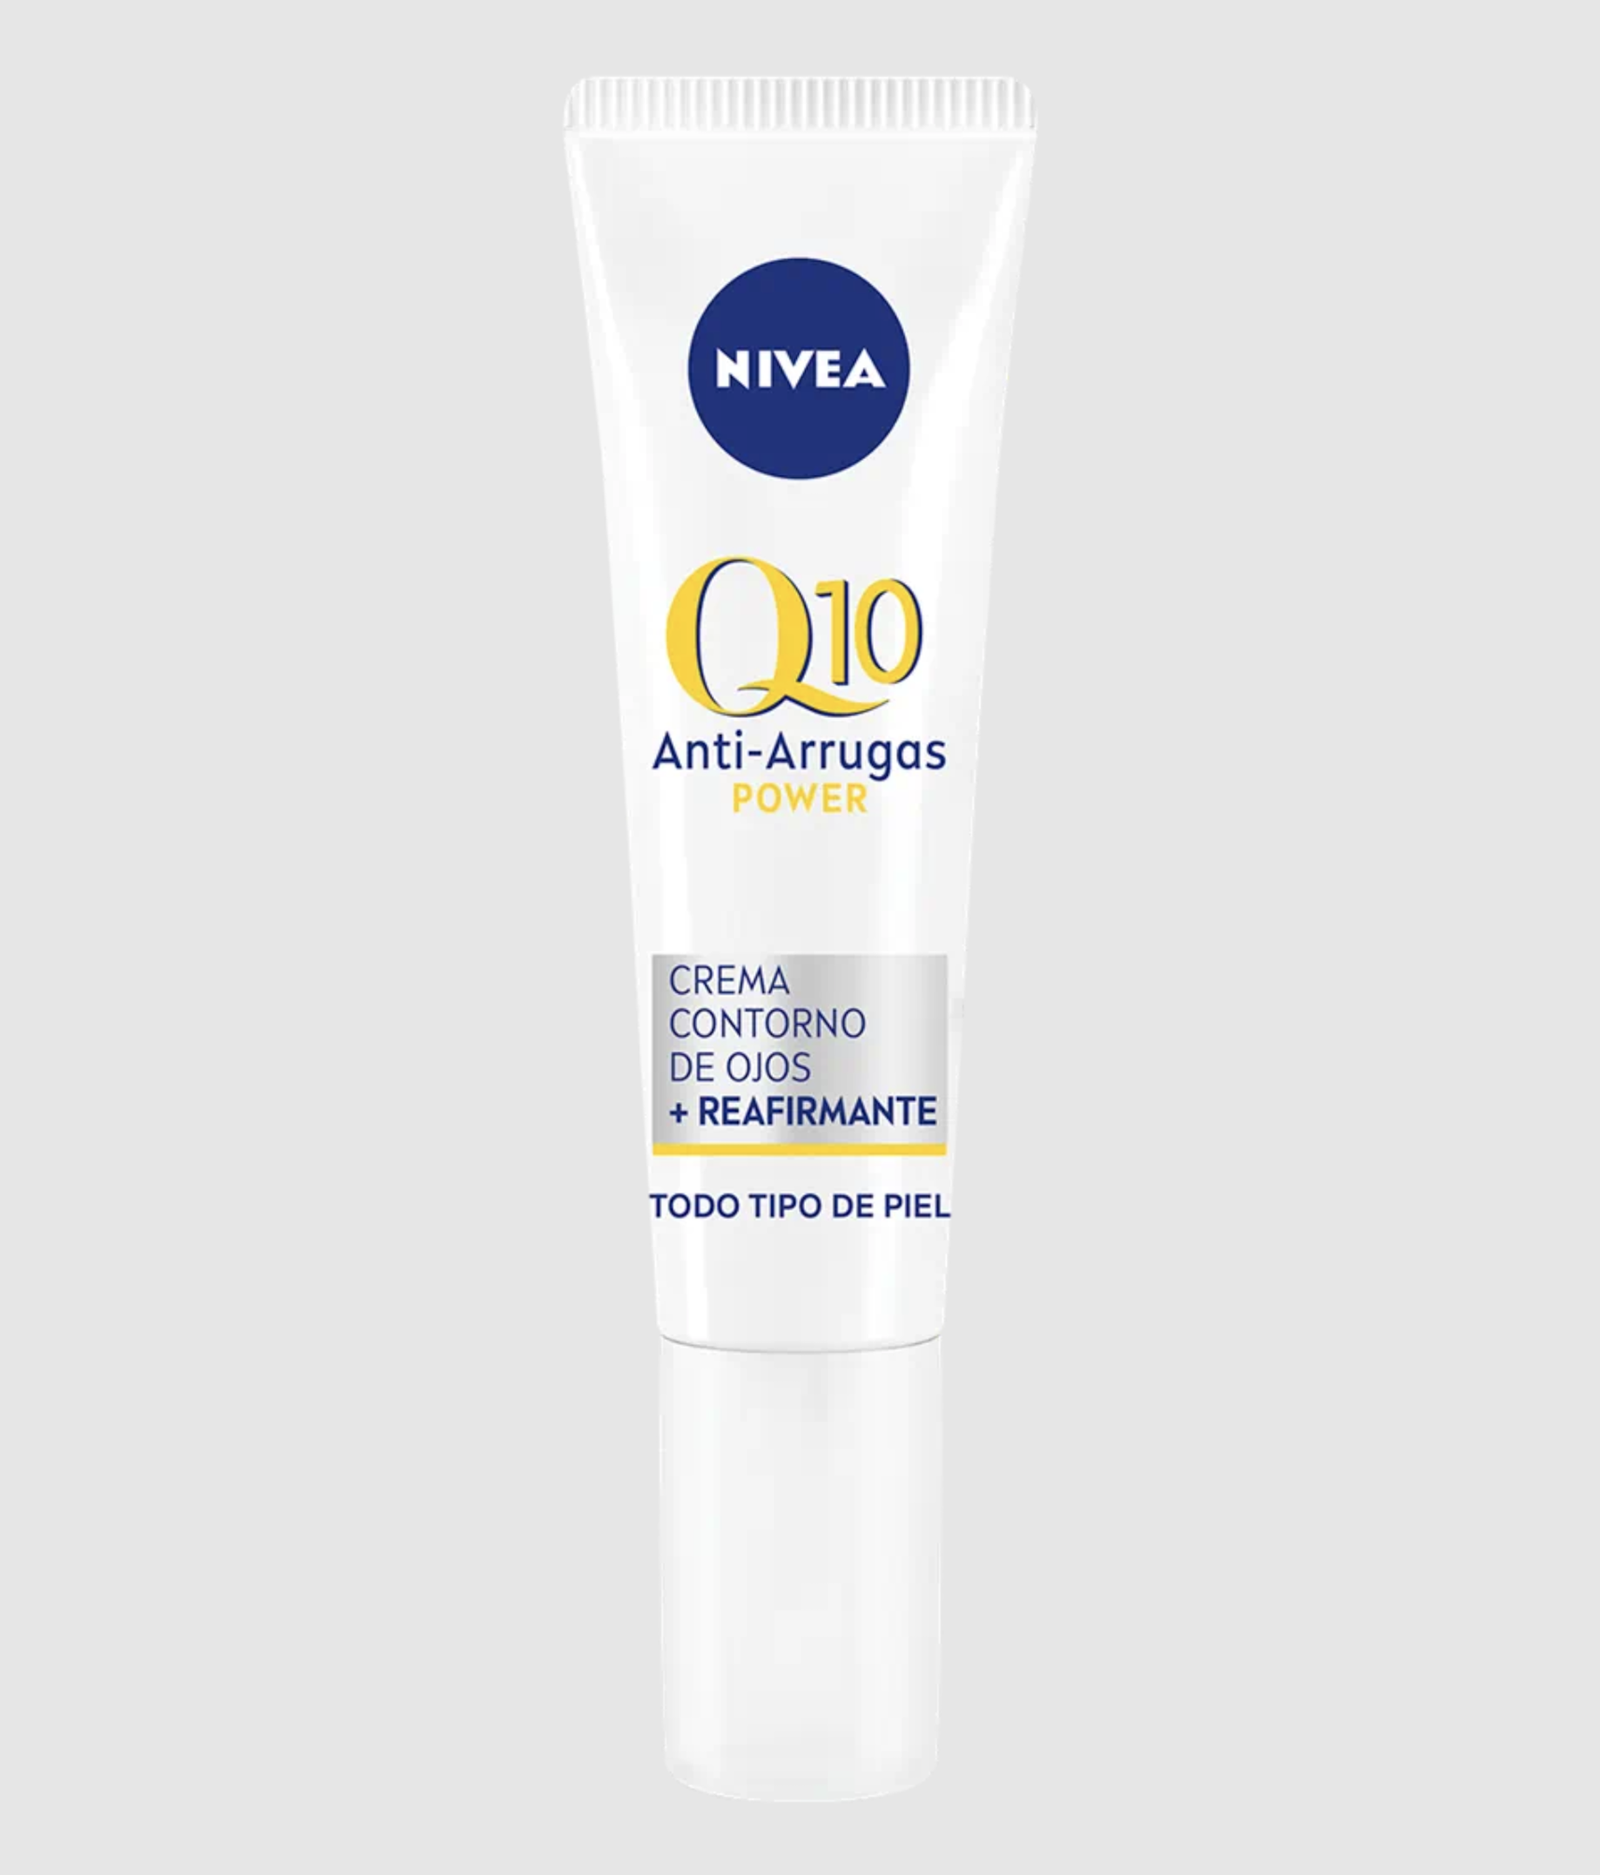 Cremas faciales que previenen las arrugas con q10